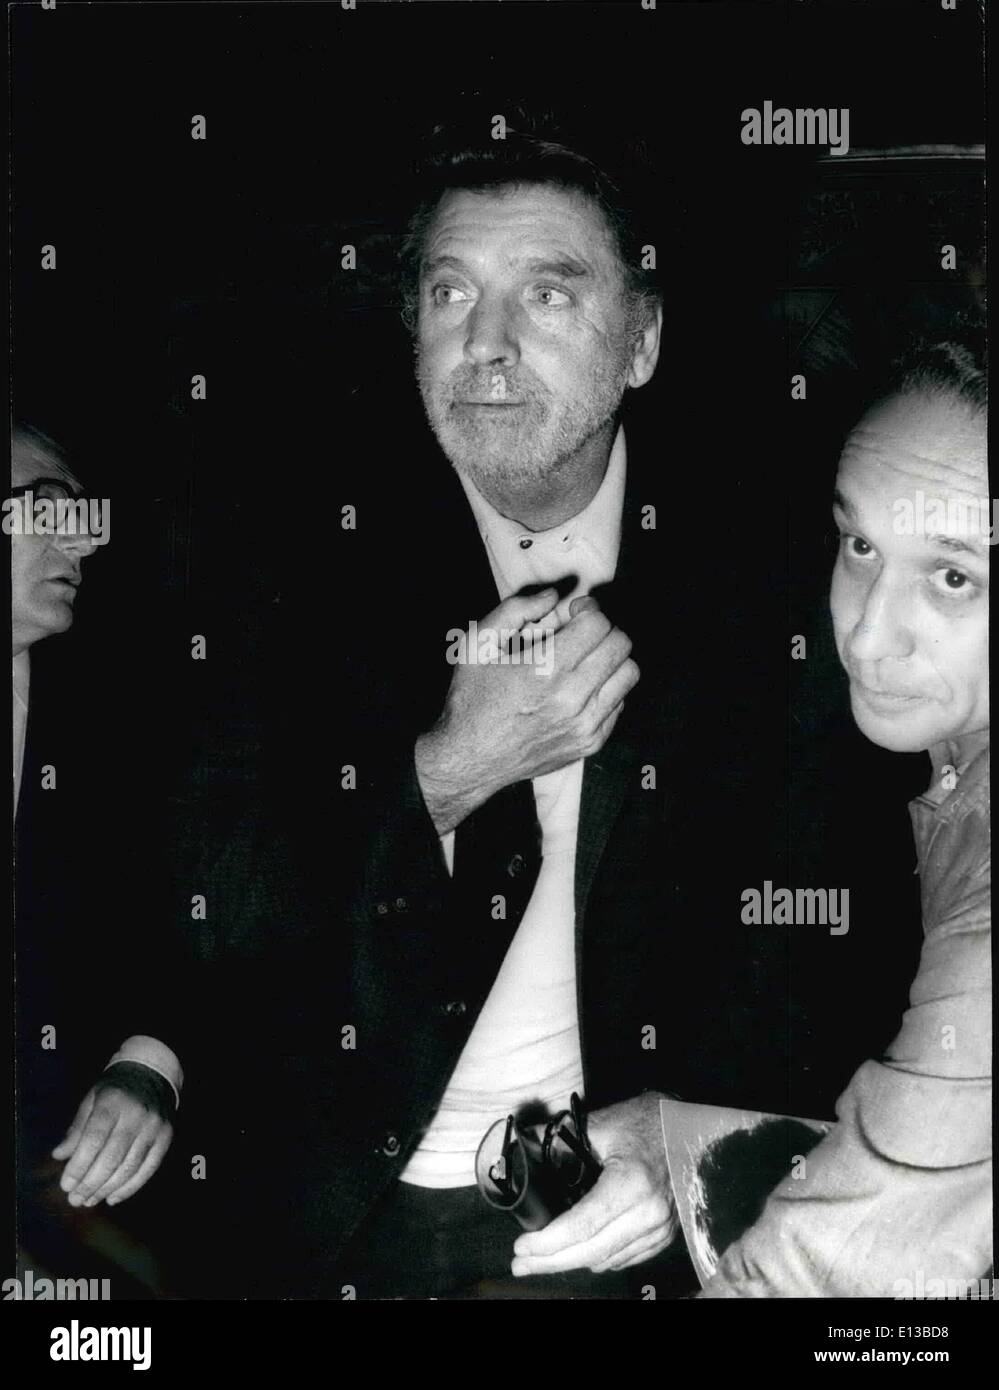 Febrero 29, 2012 - Roma, 26-9-73 Burt Lancaster se convertirá en Moisés. Burt Lancaster comenzará en lugares de Moisés un telefilme Giampaolo Cresci el calor de la Rai ha presentado el actor a los fotógrafos en una conferencia de prensa en la televisión italiana. Foto de stock